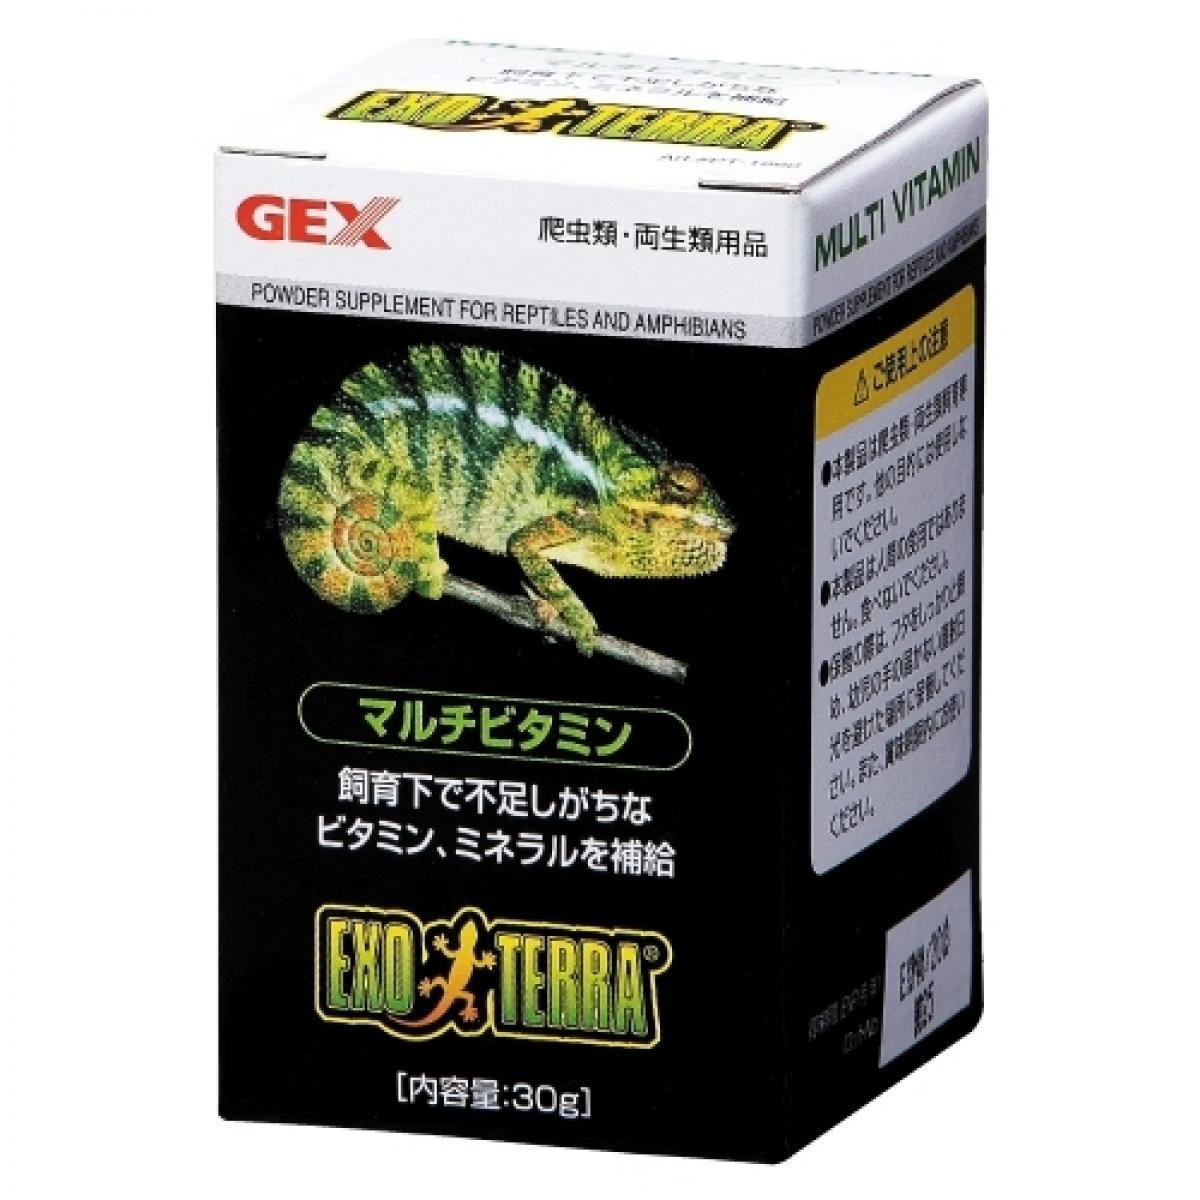 GEX EXOTERRA マルチビタミン 30g PT1860 ビタミン ミネラル 爬虫類 両生類 パウダータイプ